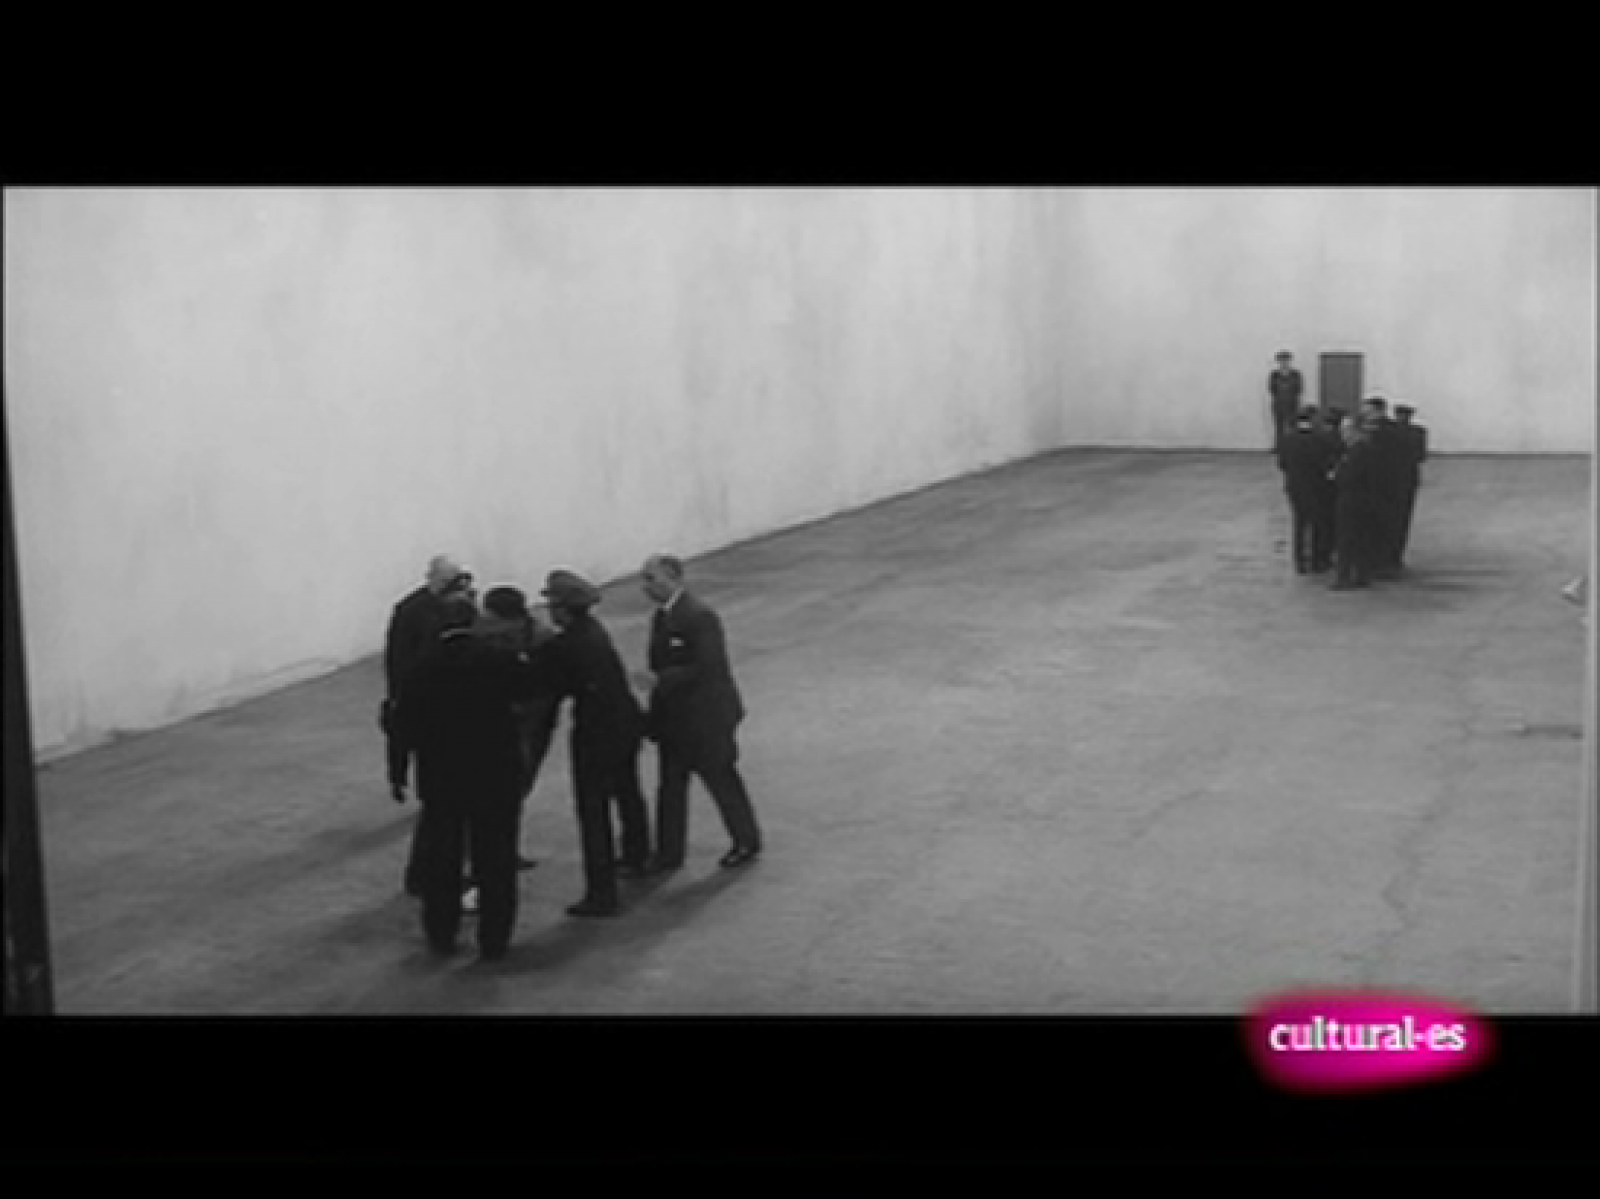 La mitad invisible - El verdugo, de Luís García Berlanga, la maestría en el cine